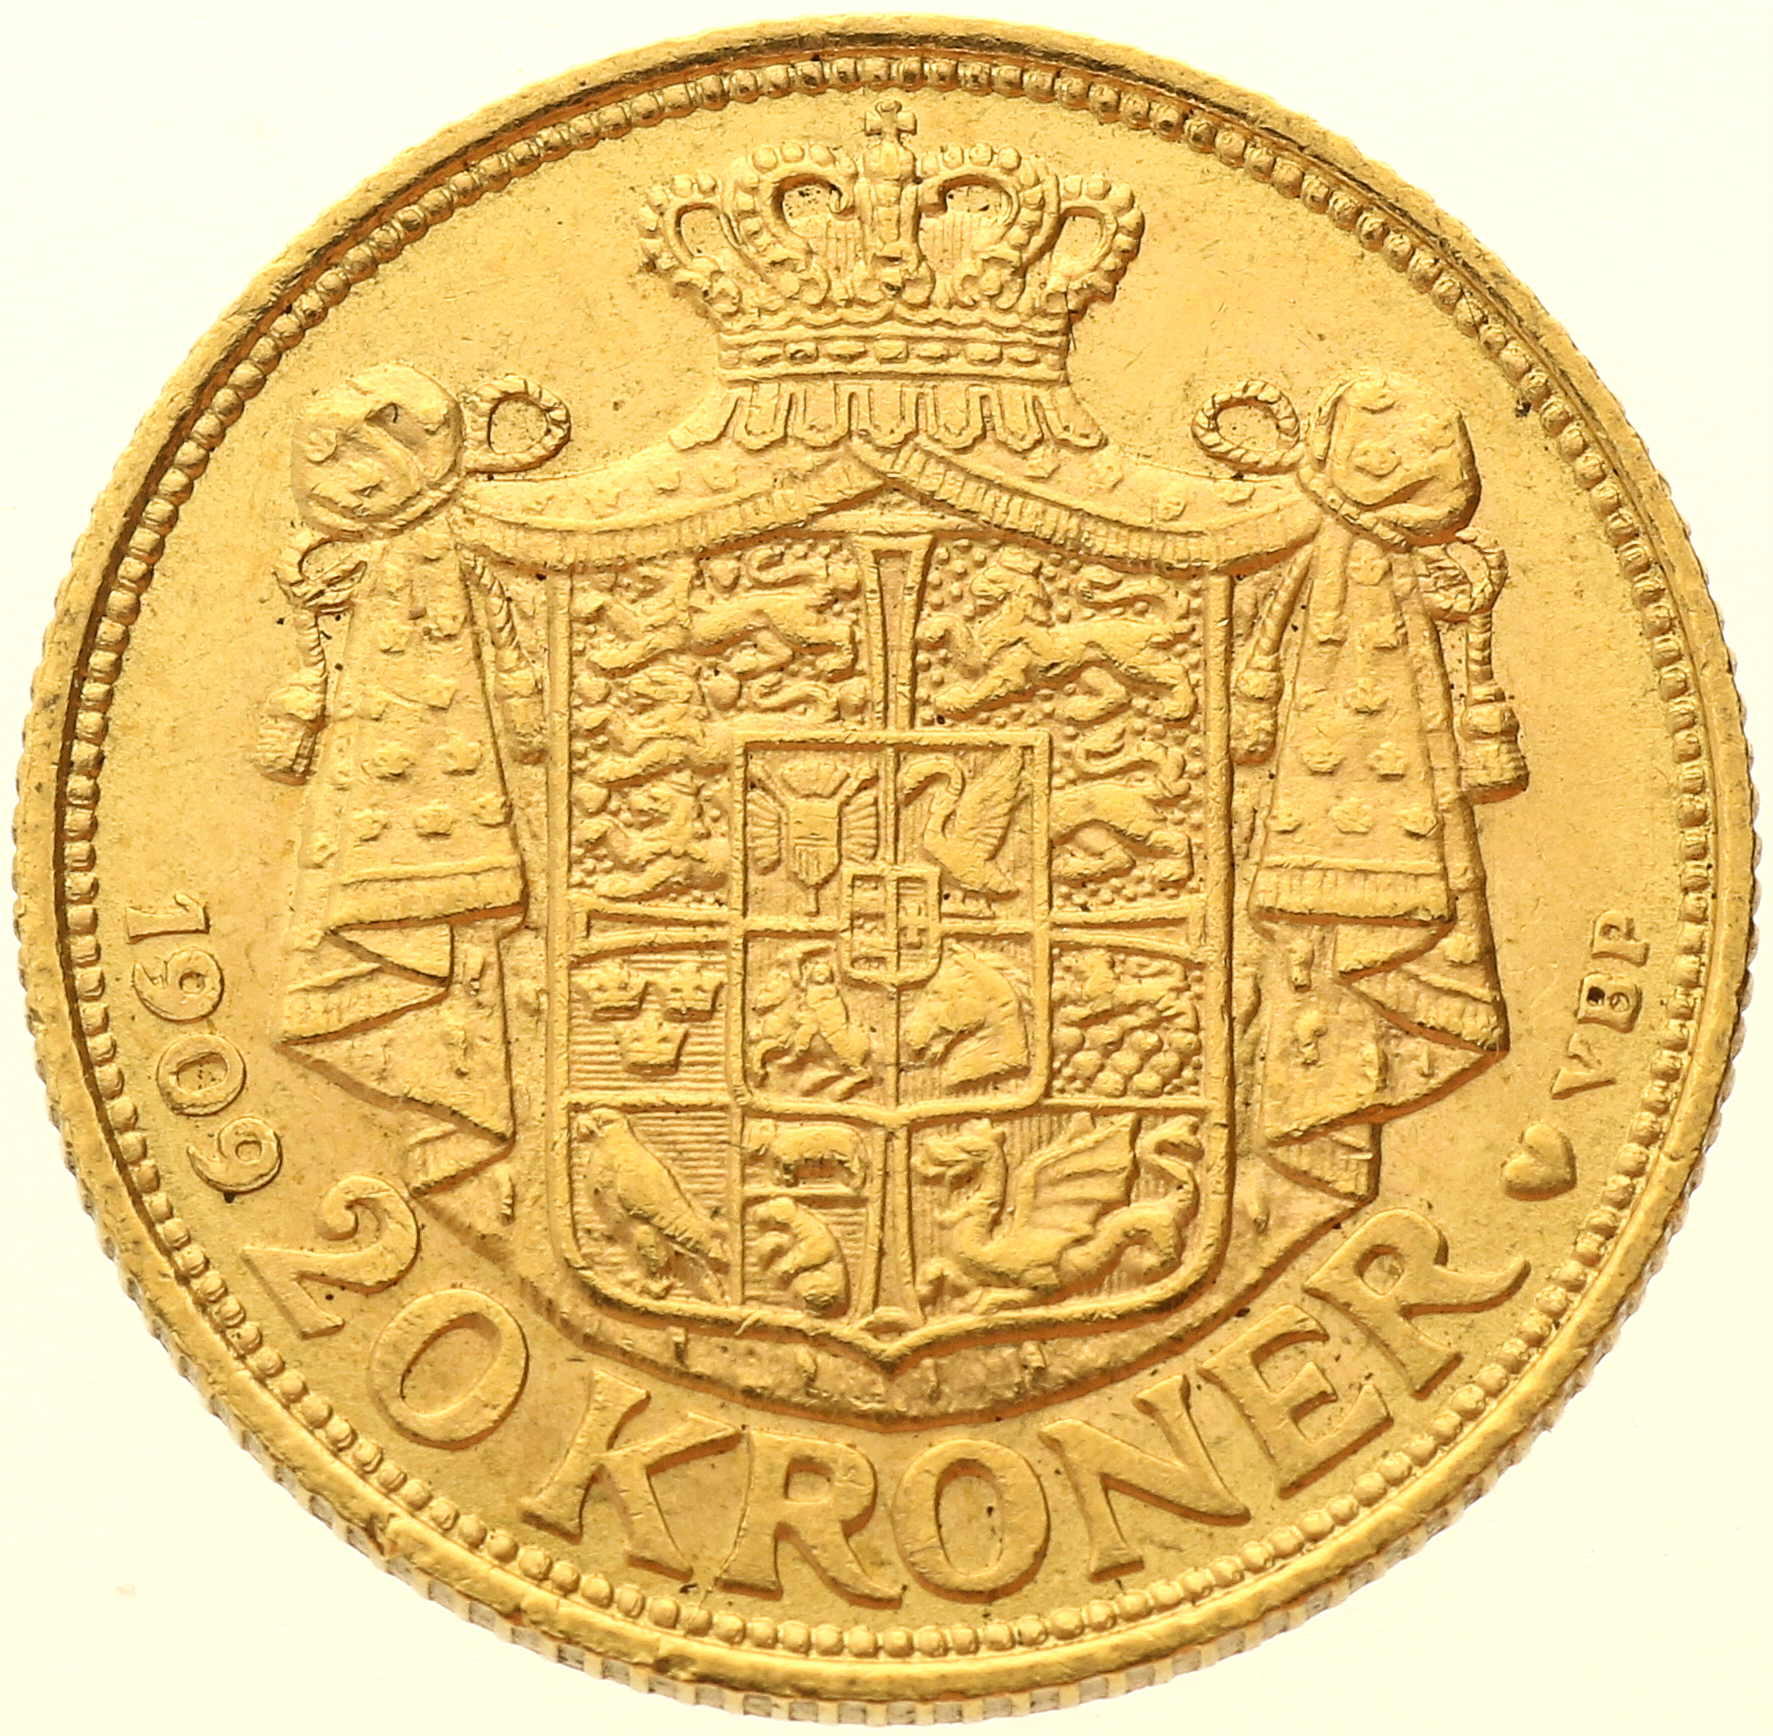 Denmark - 20 kroner - 1909 - Frederik VIII